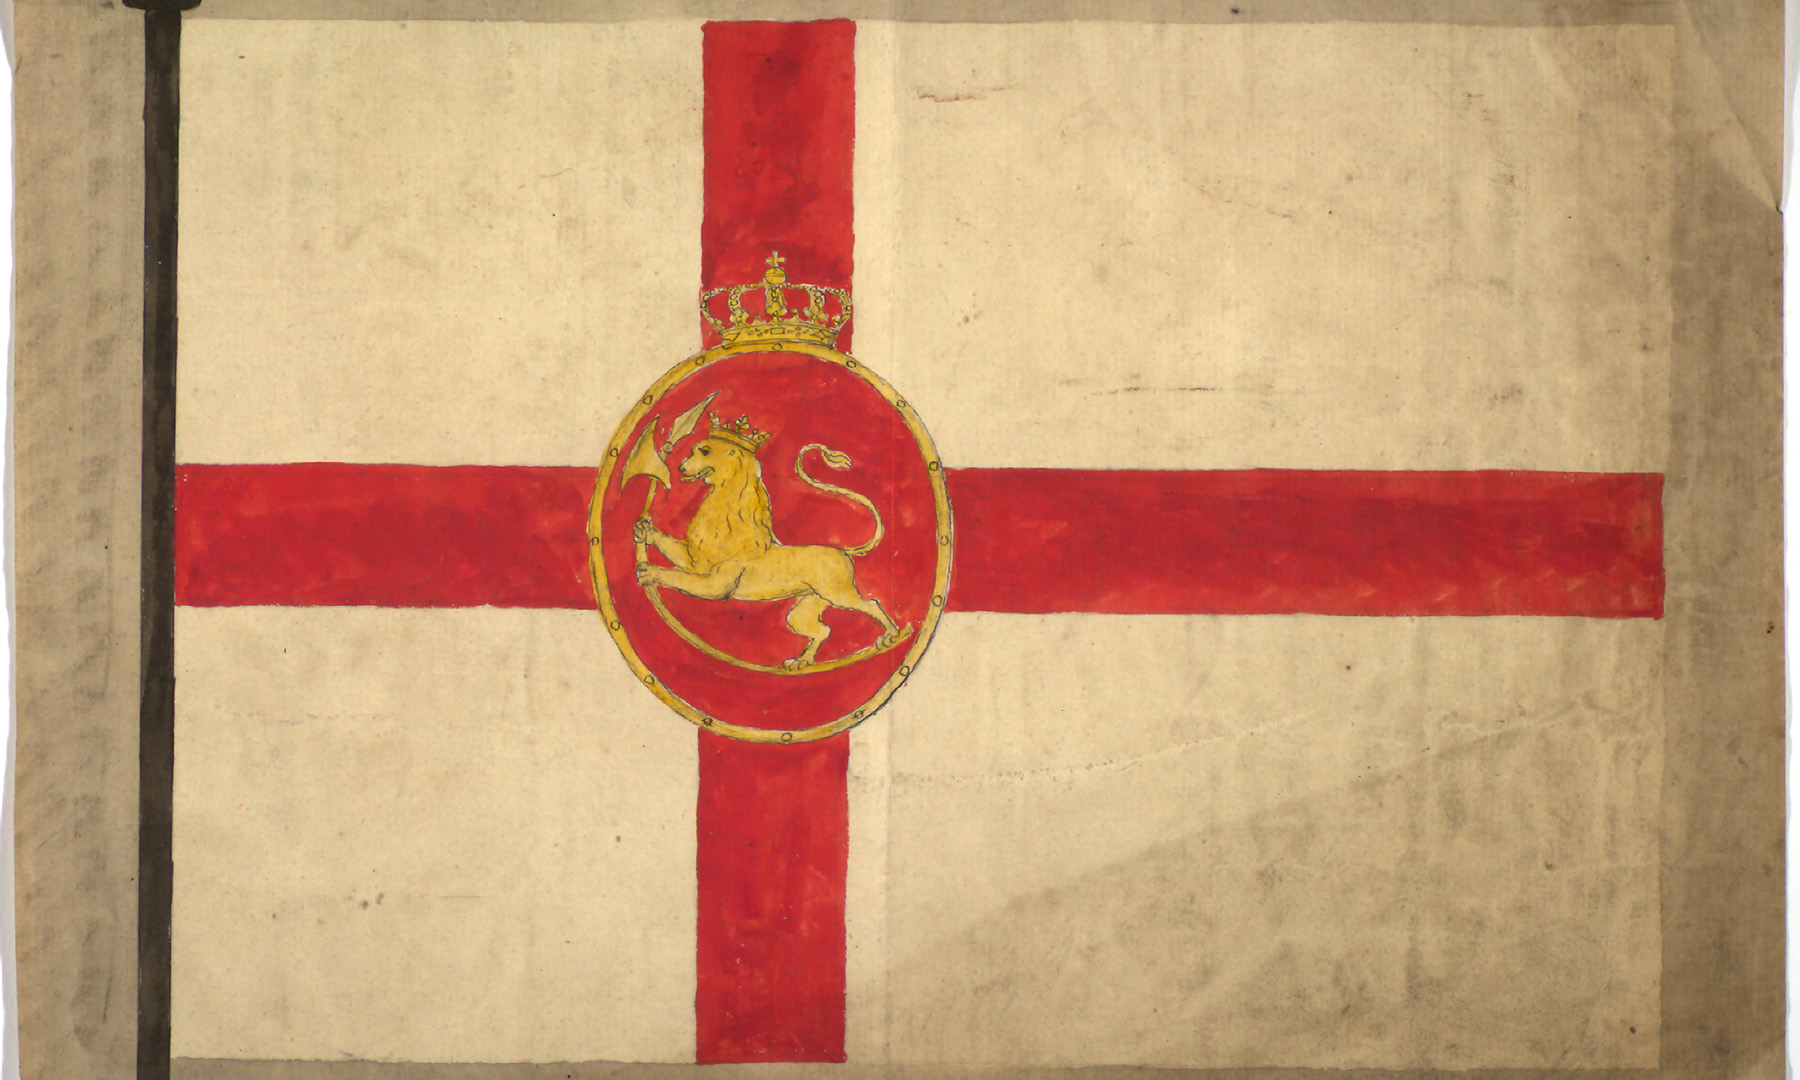 Forslag til flagg fra mai 1821, utstilt i Stortinget som nr. 16. Rødt kors på hvit bakgrunn med riksløve i rød sirkel på midten.